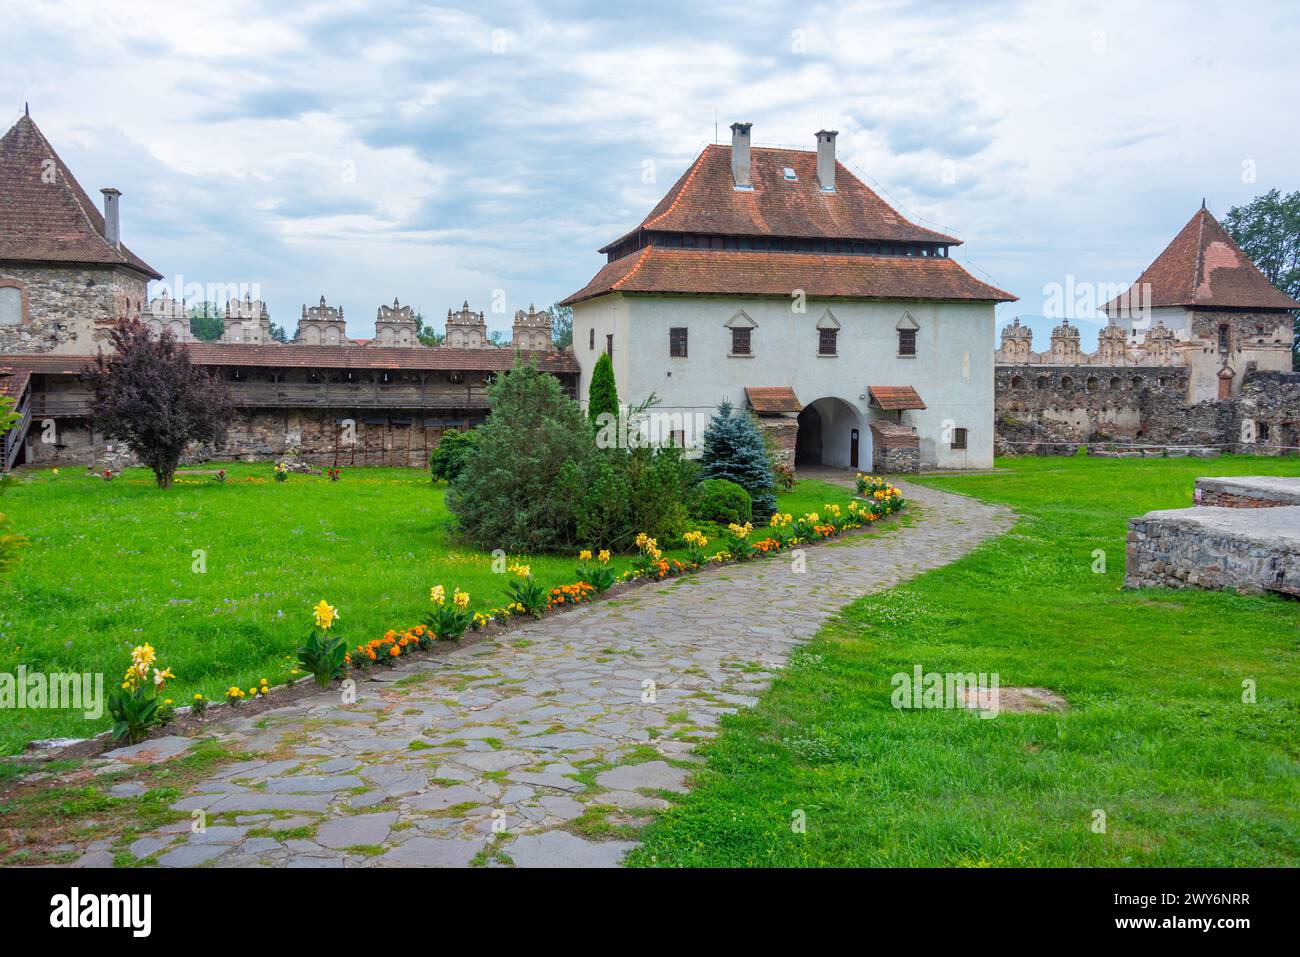 View of the Lazar castle in Lazarea, Romania Stock Photo